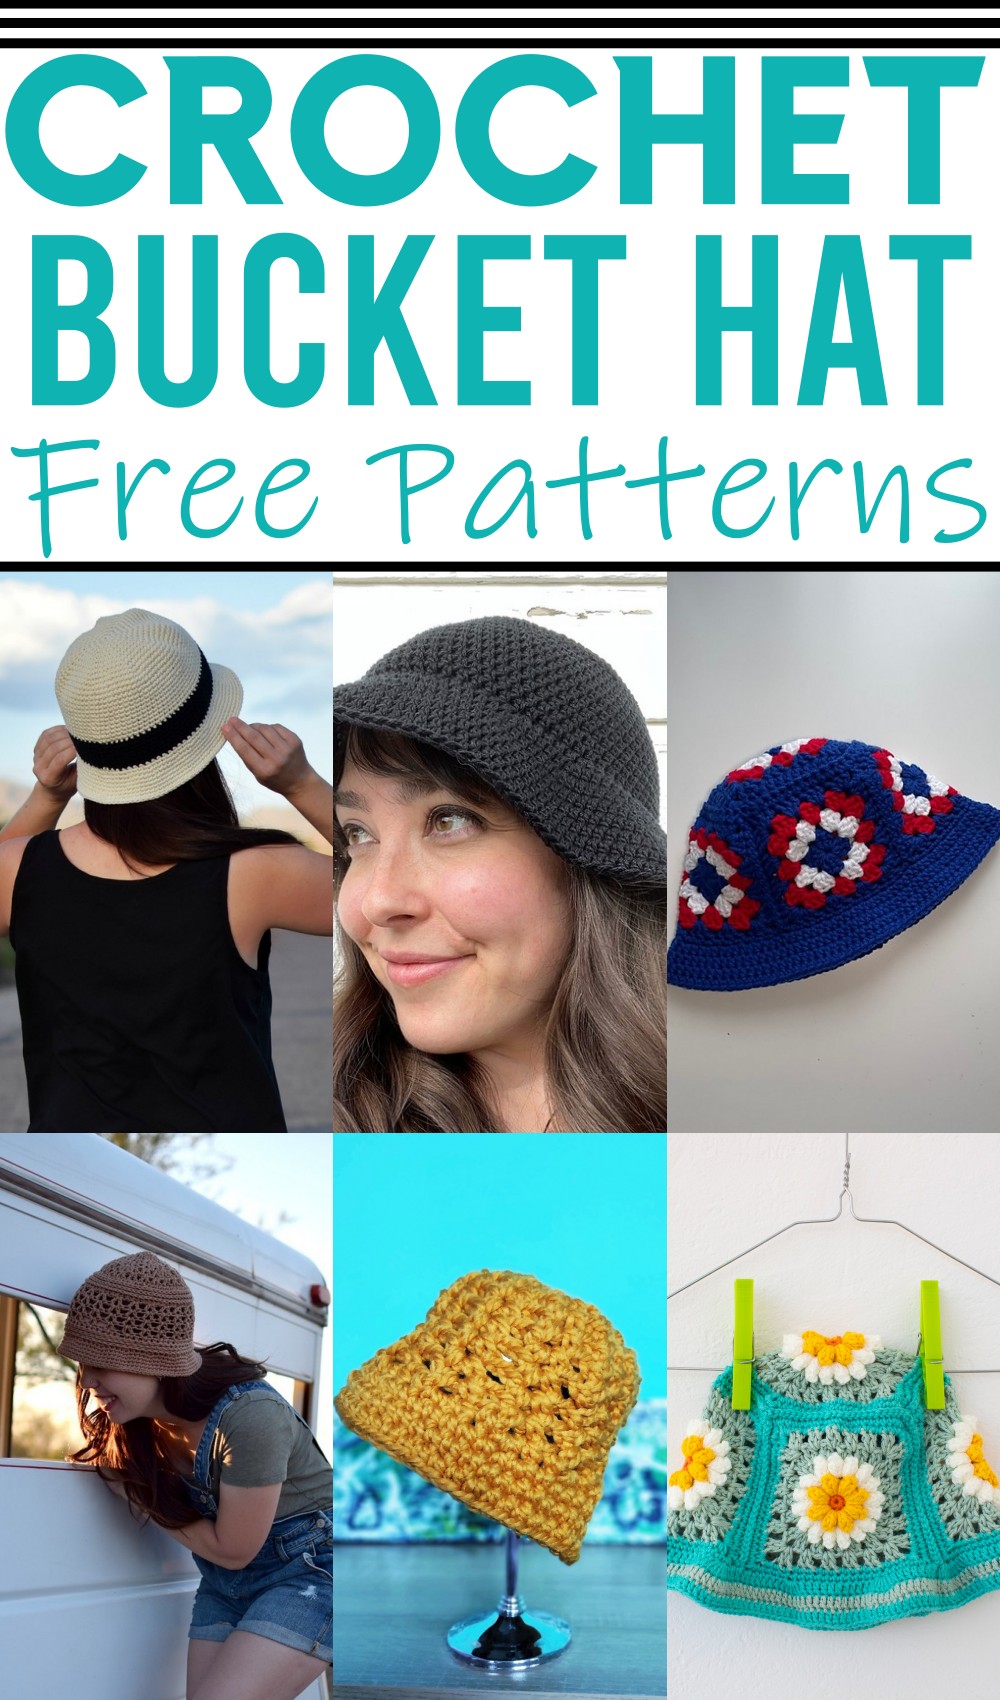 Free Crochet Bucket Hat Patterns